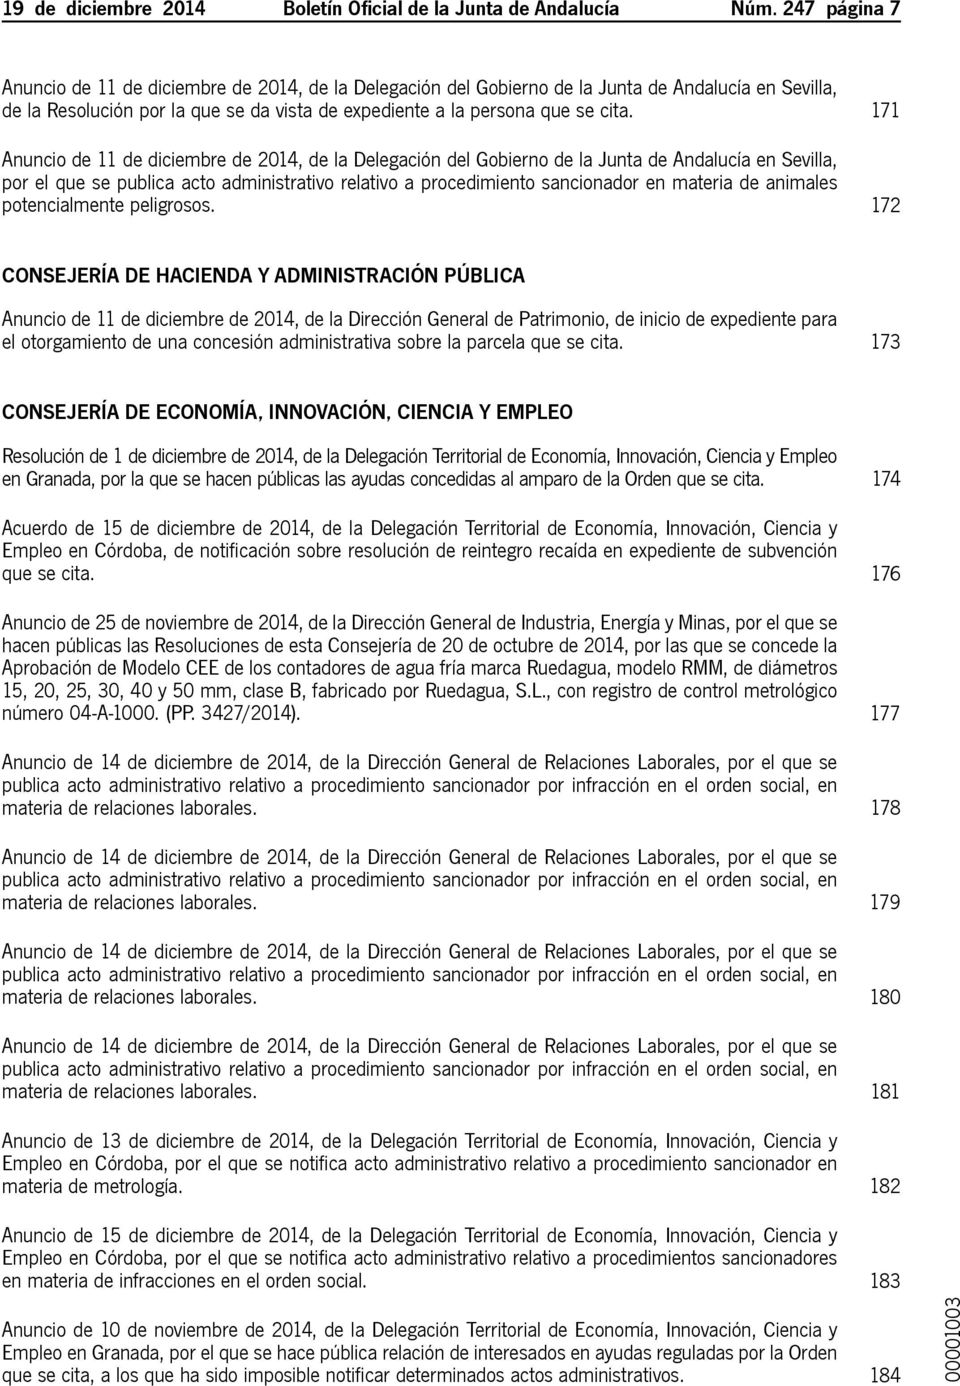 171 Anuncio de 11 de diciembre de 2014, de la Delegación del Gobierno de la Junta de Andalucía en Sevilla, por el que se publica acto administrativo relativo a procedimiento sancionador en materia de